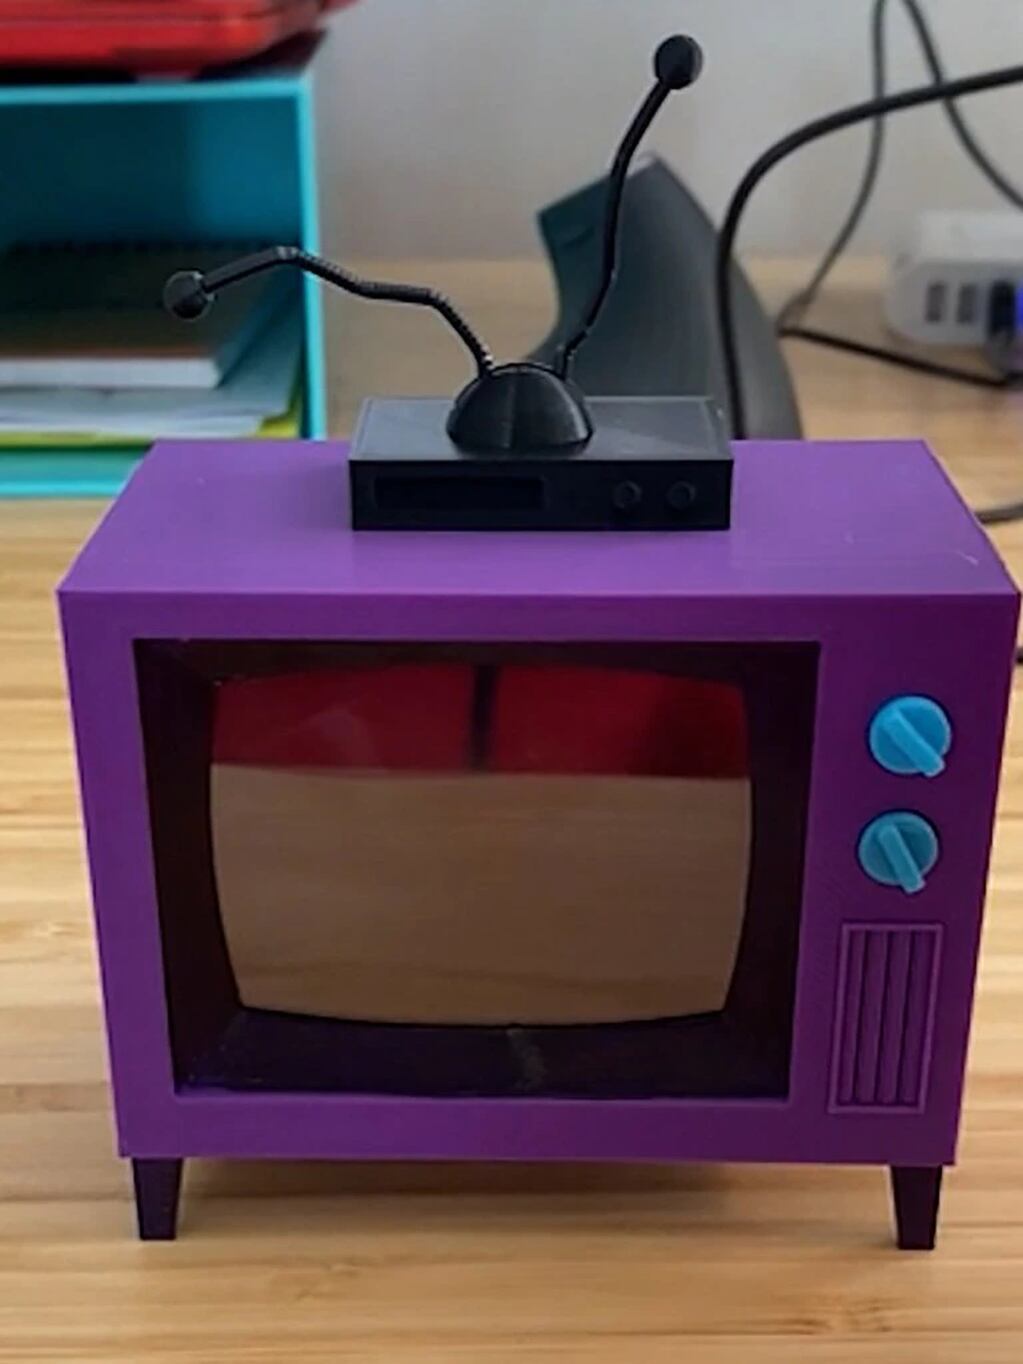 la réplica del televisor fue hecha en 3D y hasta se le puede regular el sonido.